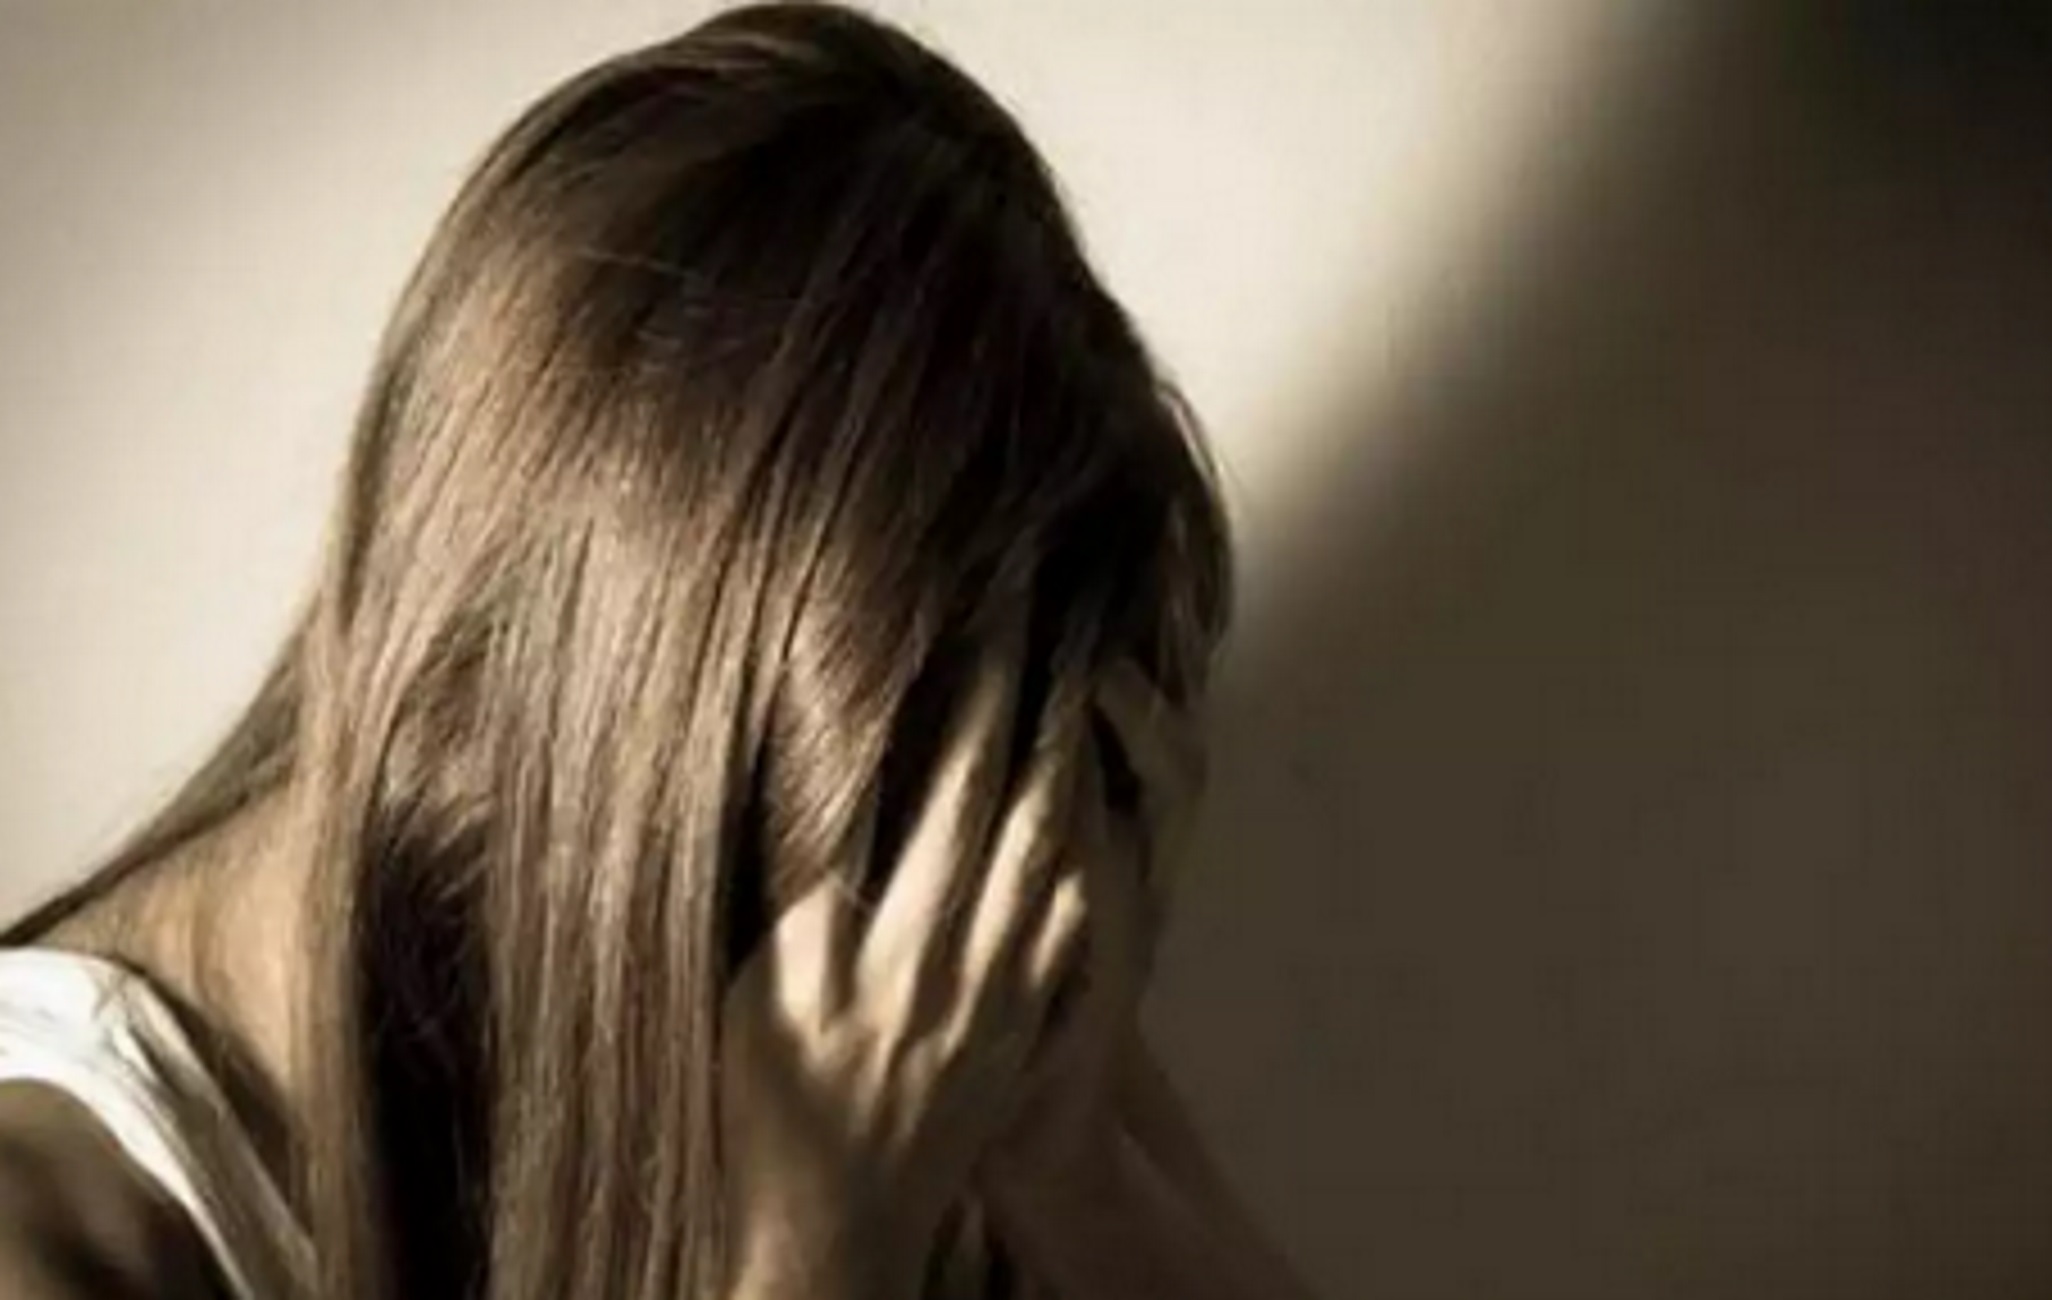 Βόλος: 35χρονος προσπάθησε να βιάσει 16χρονη την ώρα που εκείνη πήγαινε στο σχολείο της